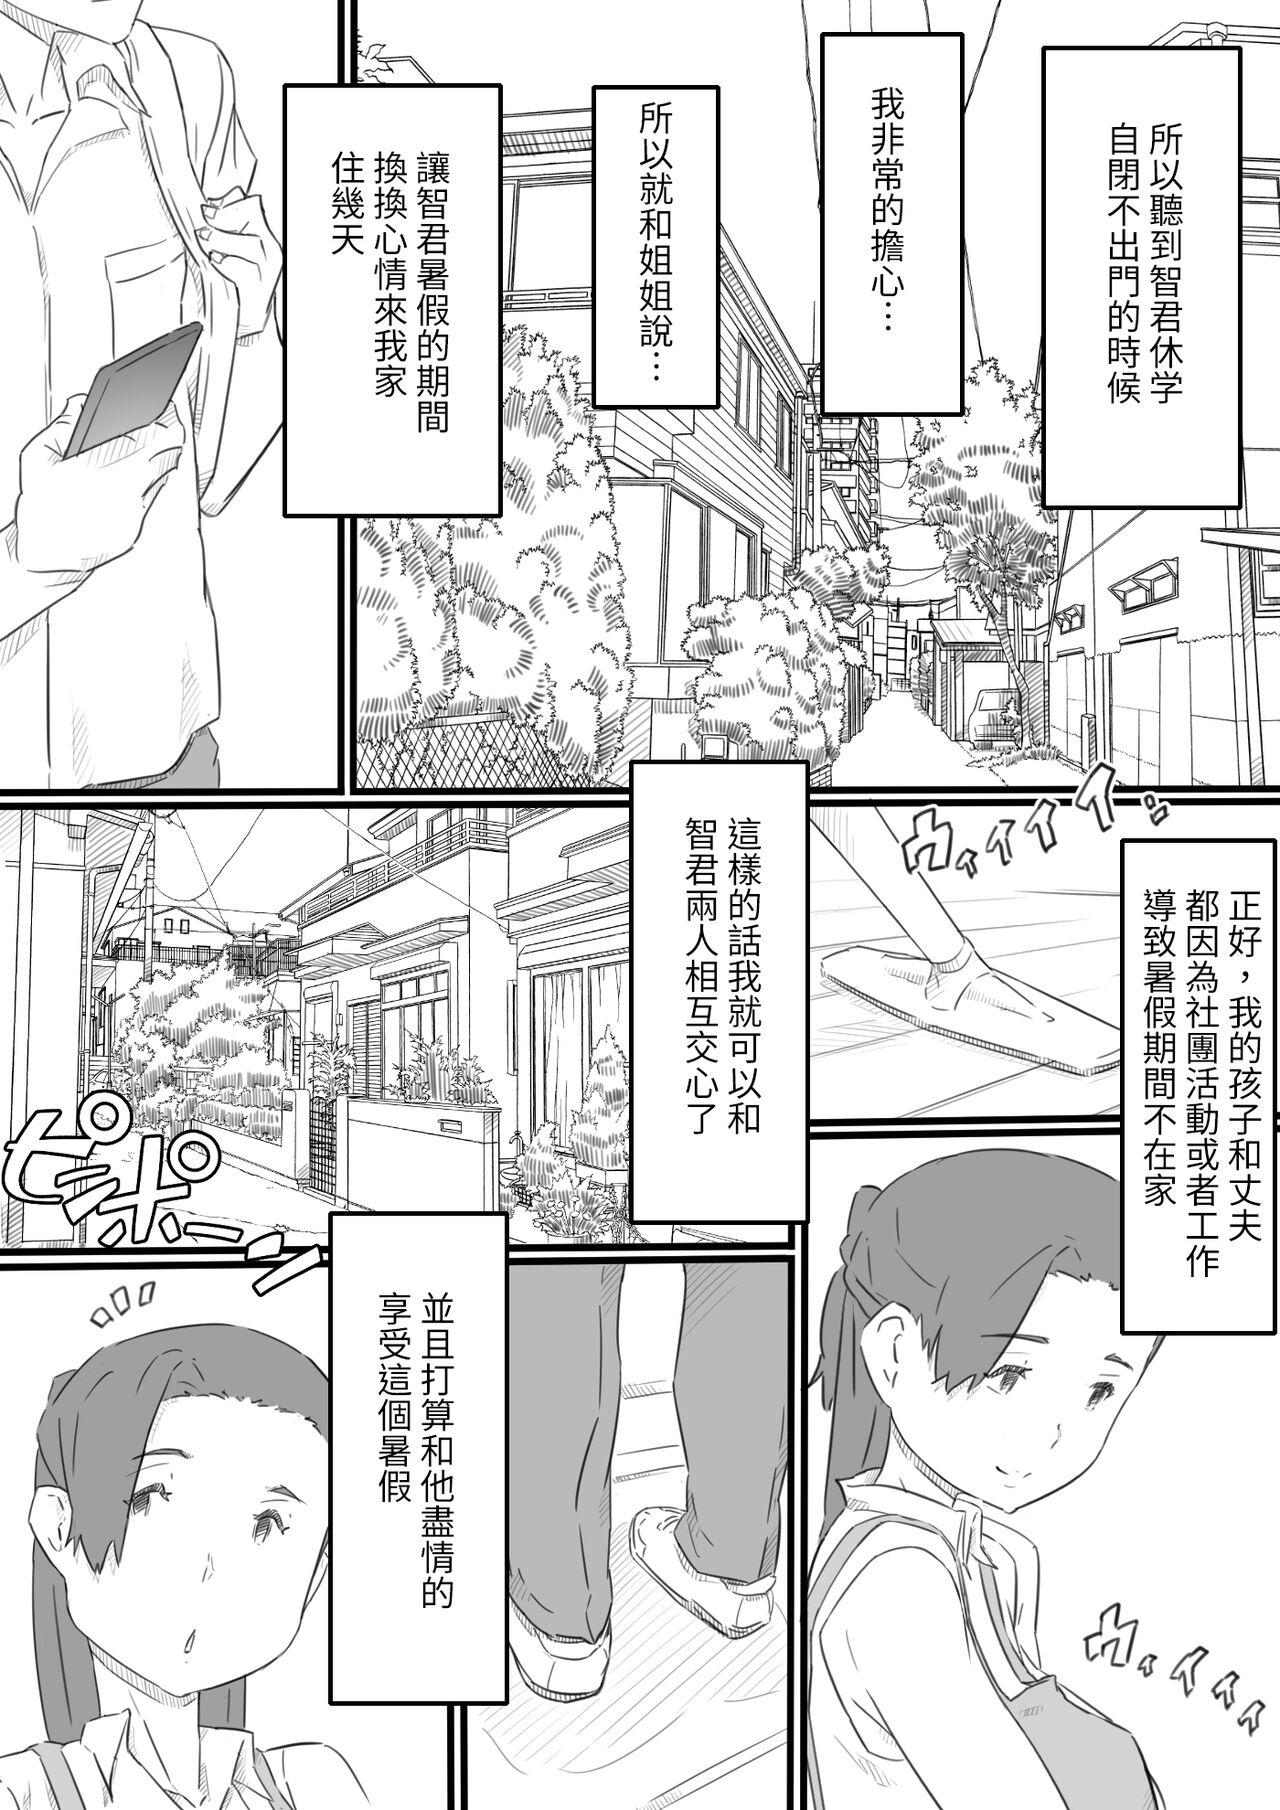 Spooning hi ki komo ri no oi xtu ko to三 nin no hitozuma‐ hito natu no omo i de…‐ Nuru Massage - Page 4